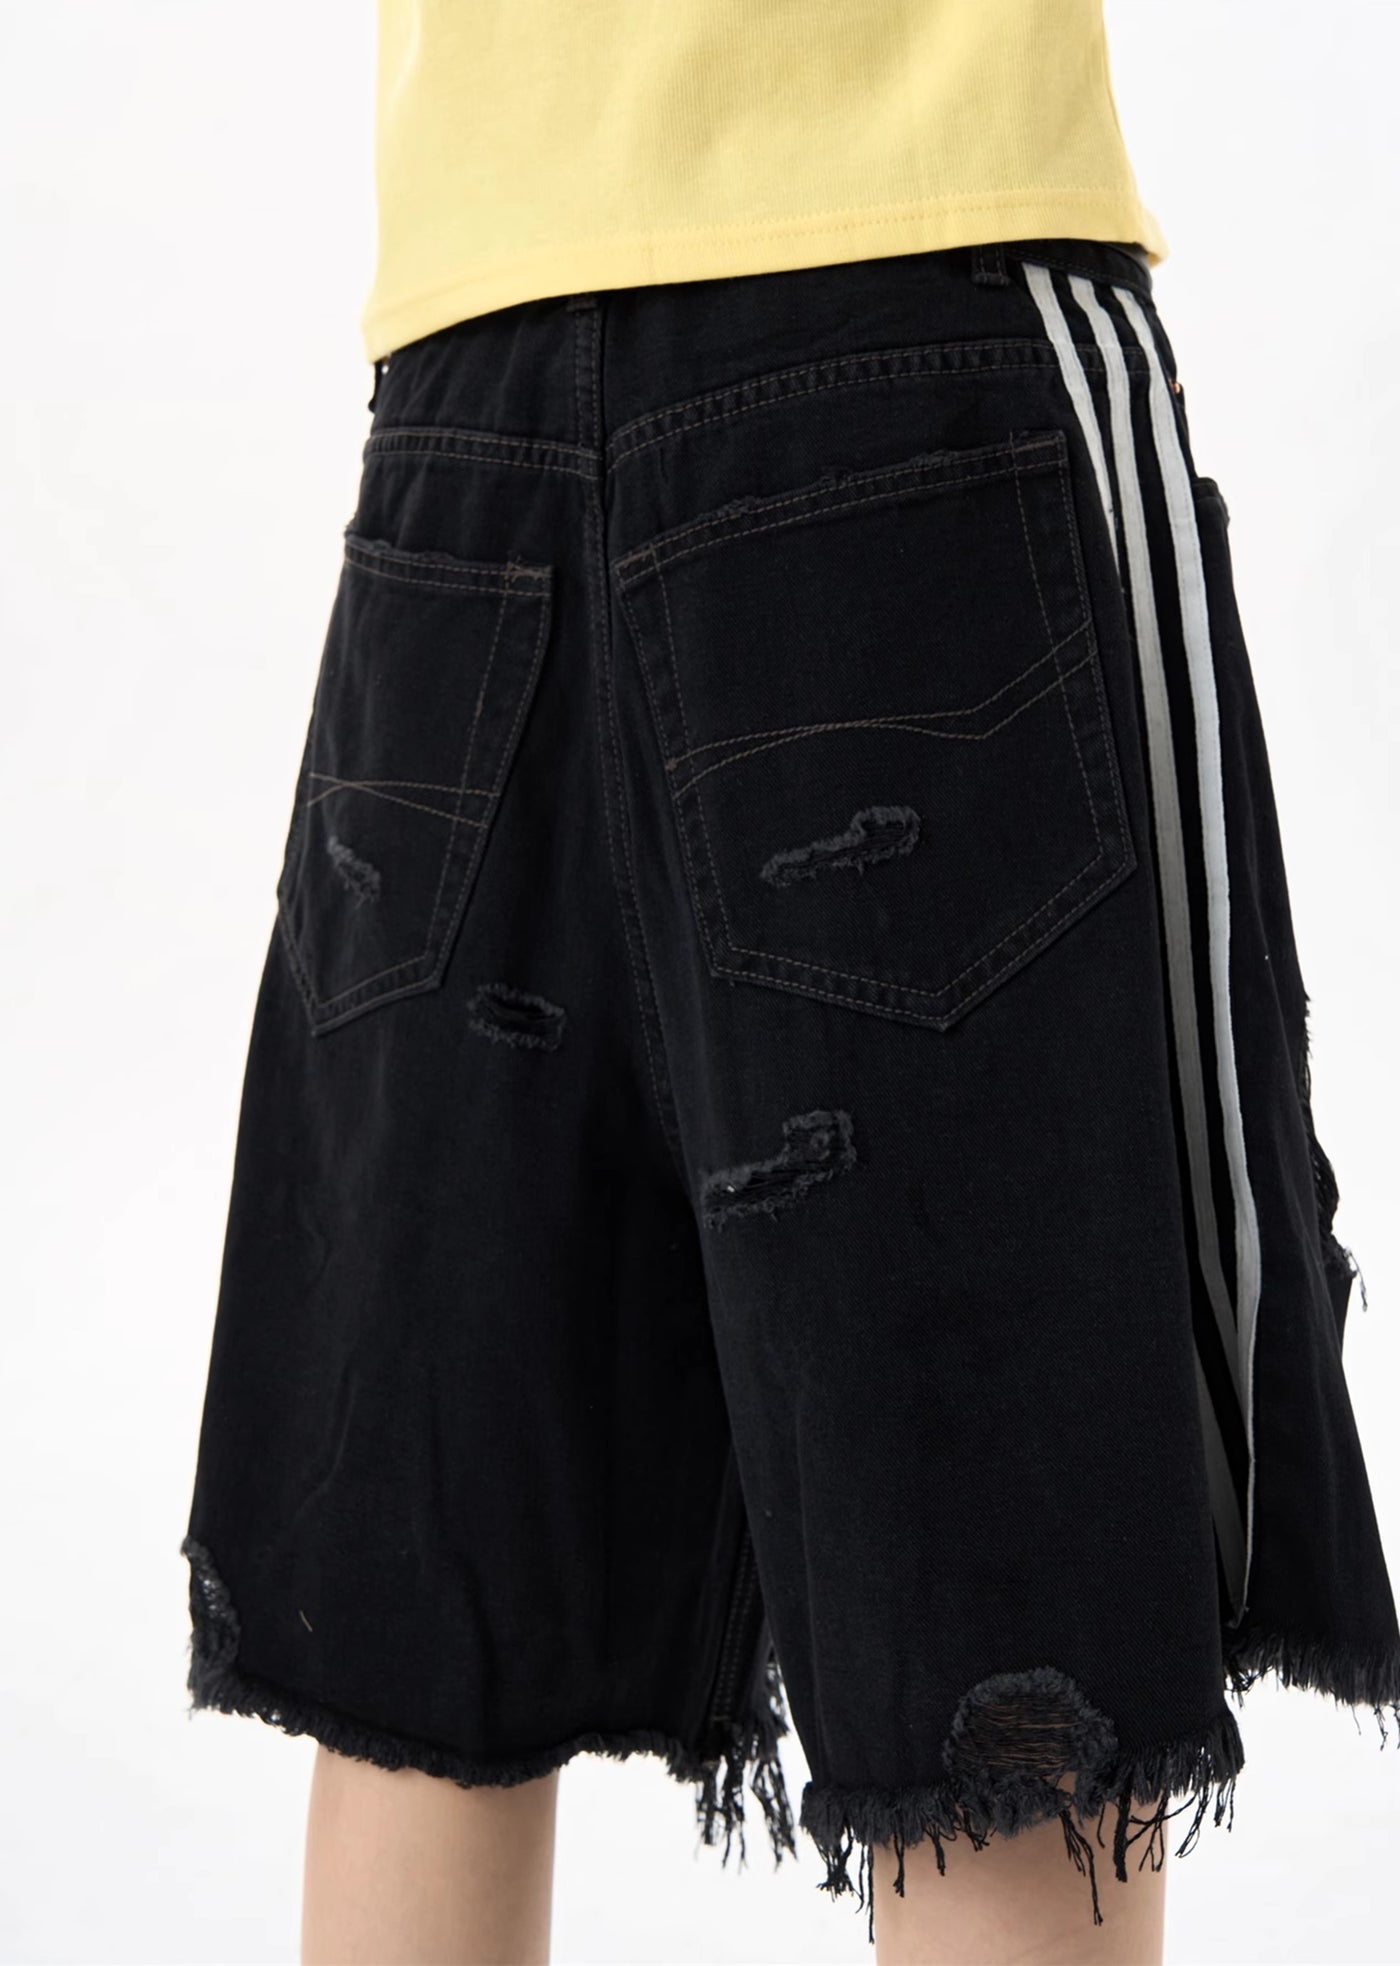 [MAXDSTR] Middle distressed hem point design black denim shorts MD0136